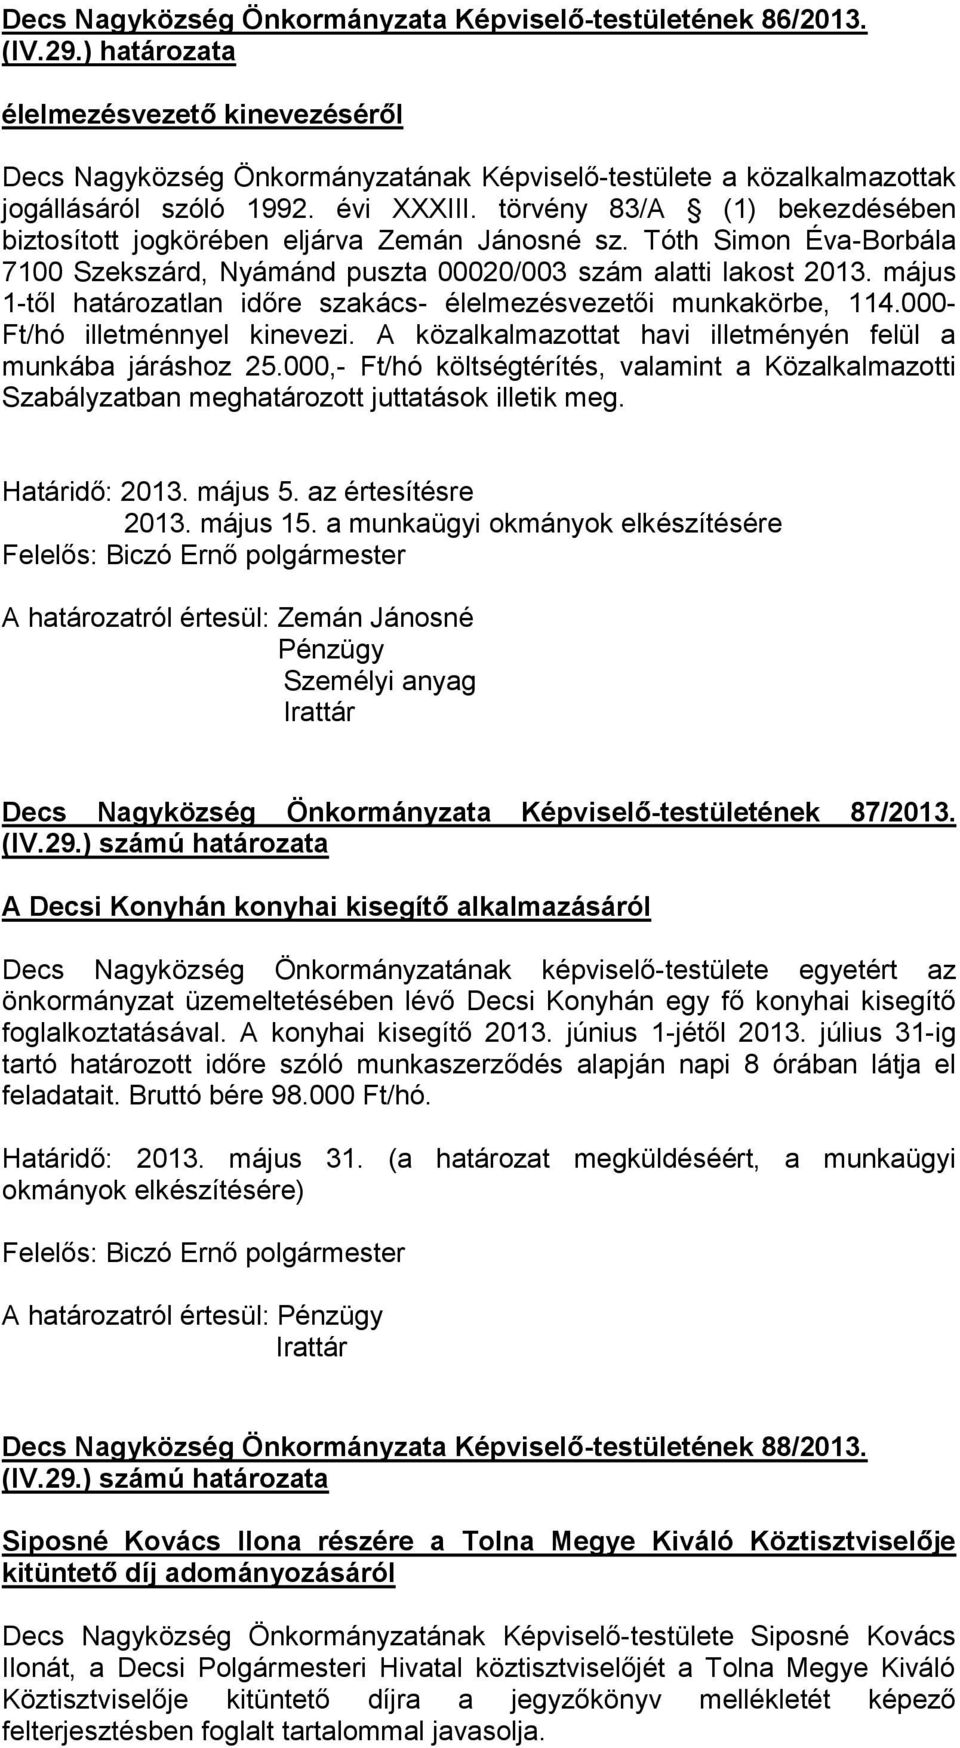 törvény 83/A (1) bekezdésében biztosított jogkörében eljárva Zemán Jánosné sz. Tóth Simon Éva-Borbála 7100 Szekszárd, Nyámánd puszta 00020/003 szám alatti lakost 2013.